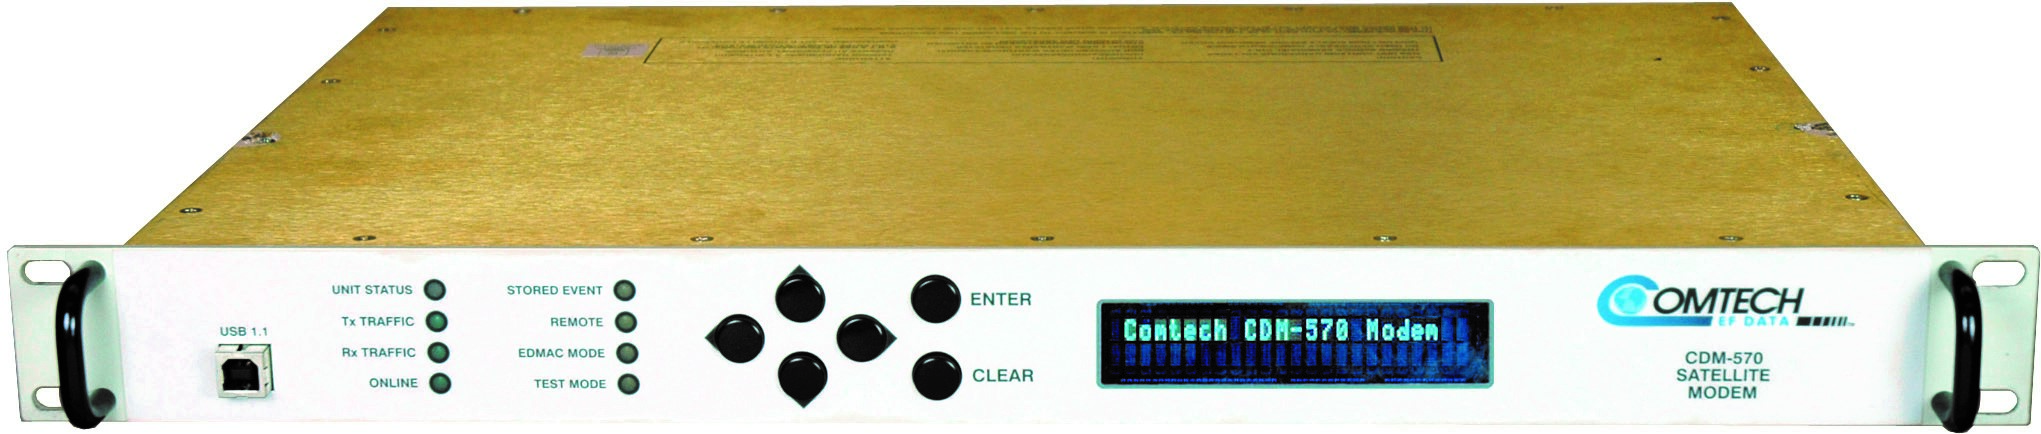 COMTECH CDM 570-L (WITH IP MODULE)